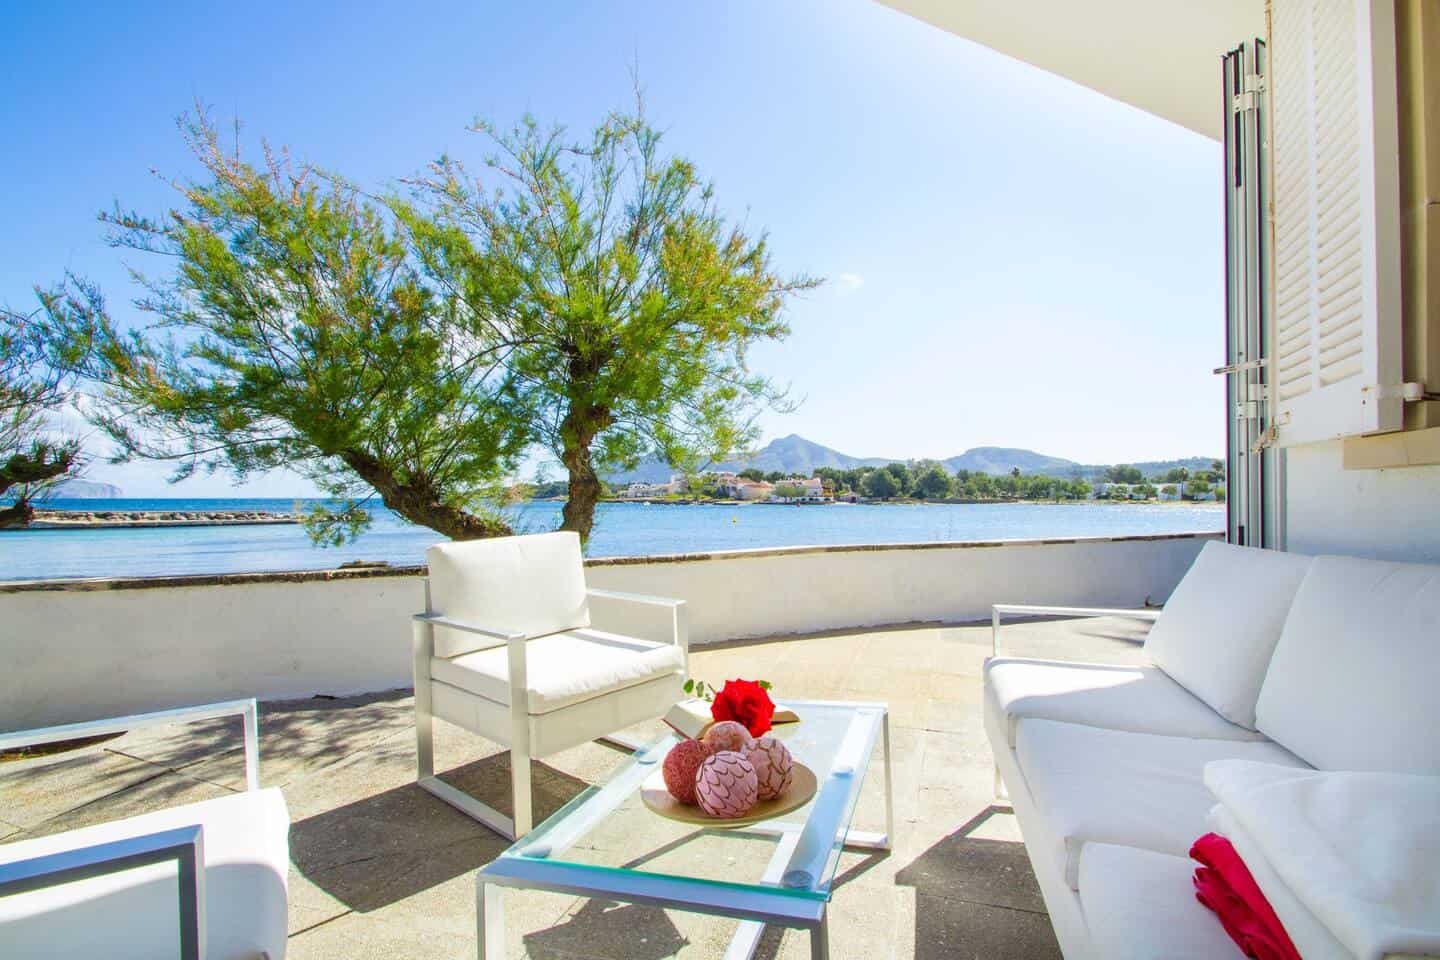 Image of Airbnb rental in Majorca, Spain